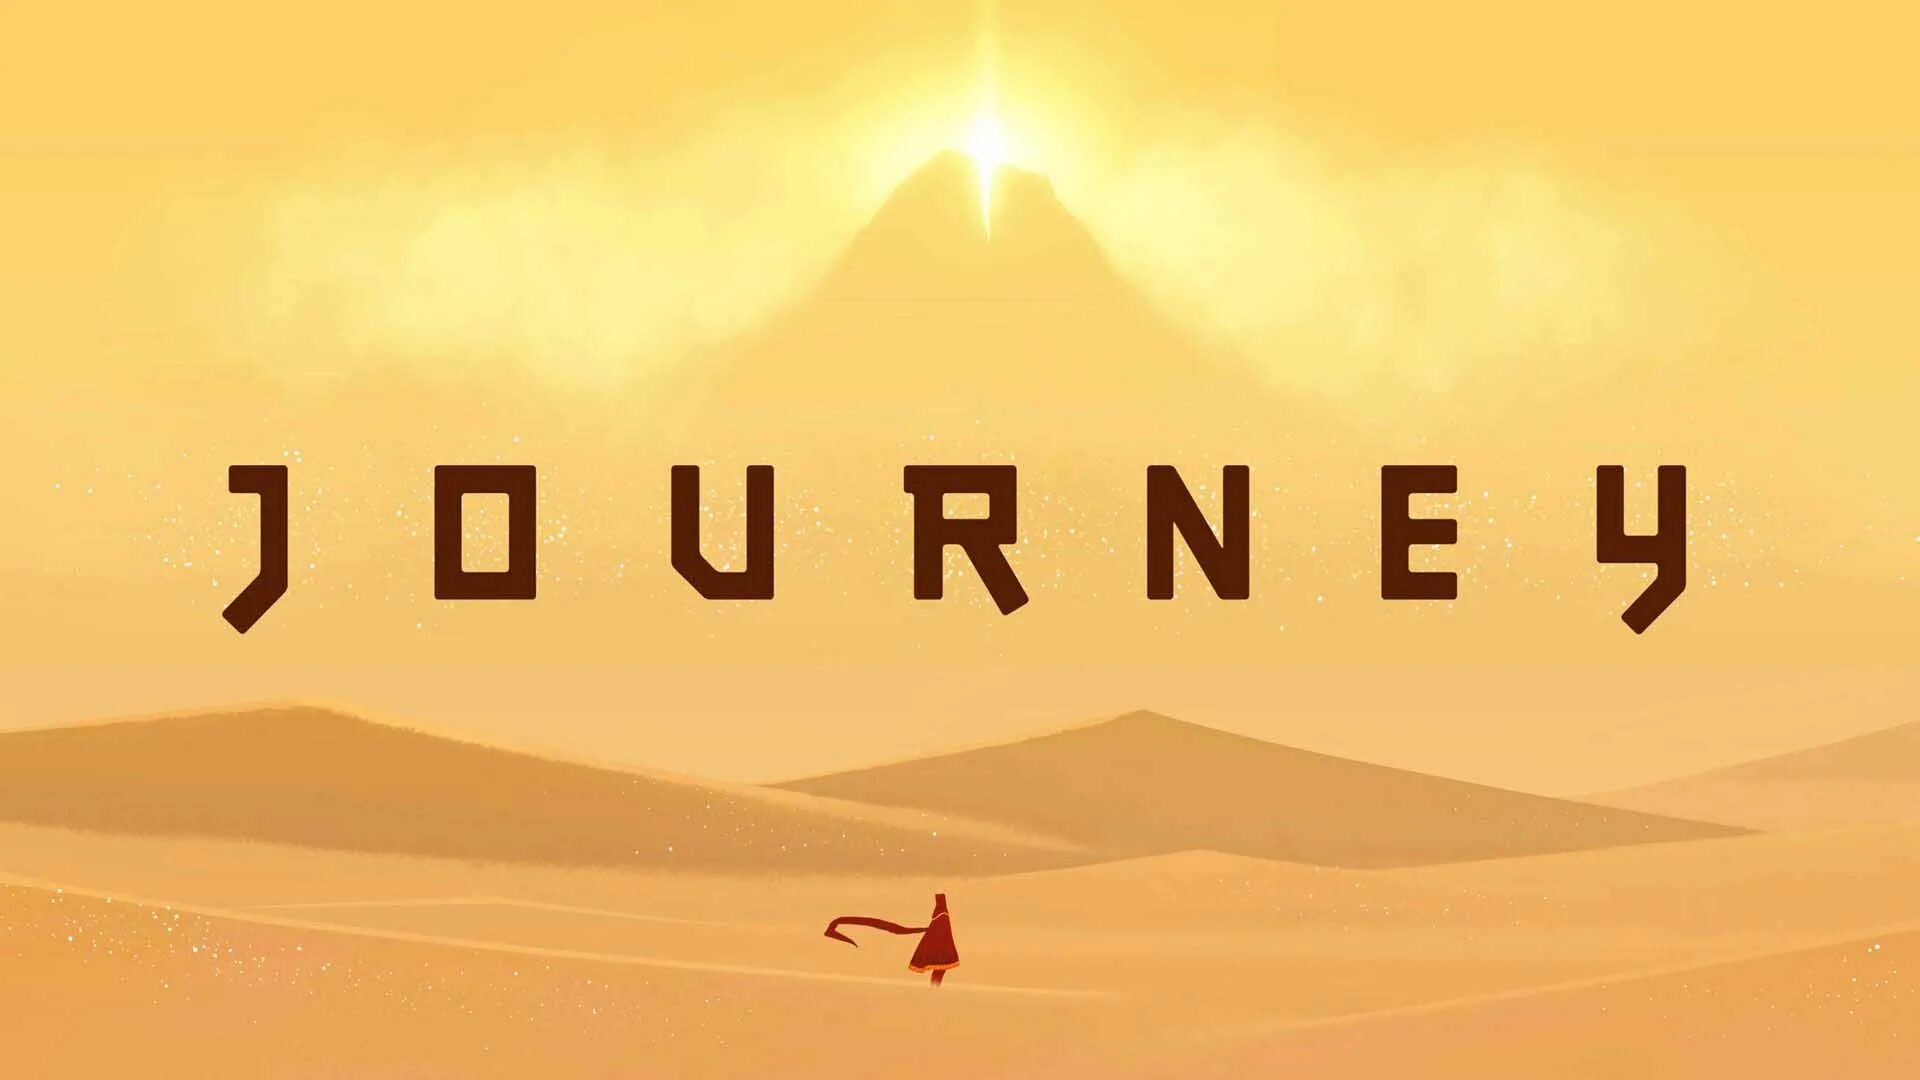 Need journey. Journey (игра, 2012). Джорни игра. Путешествие игра Journey. Journey обложка.